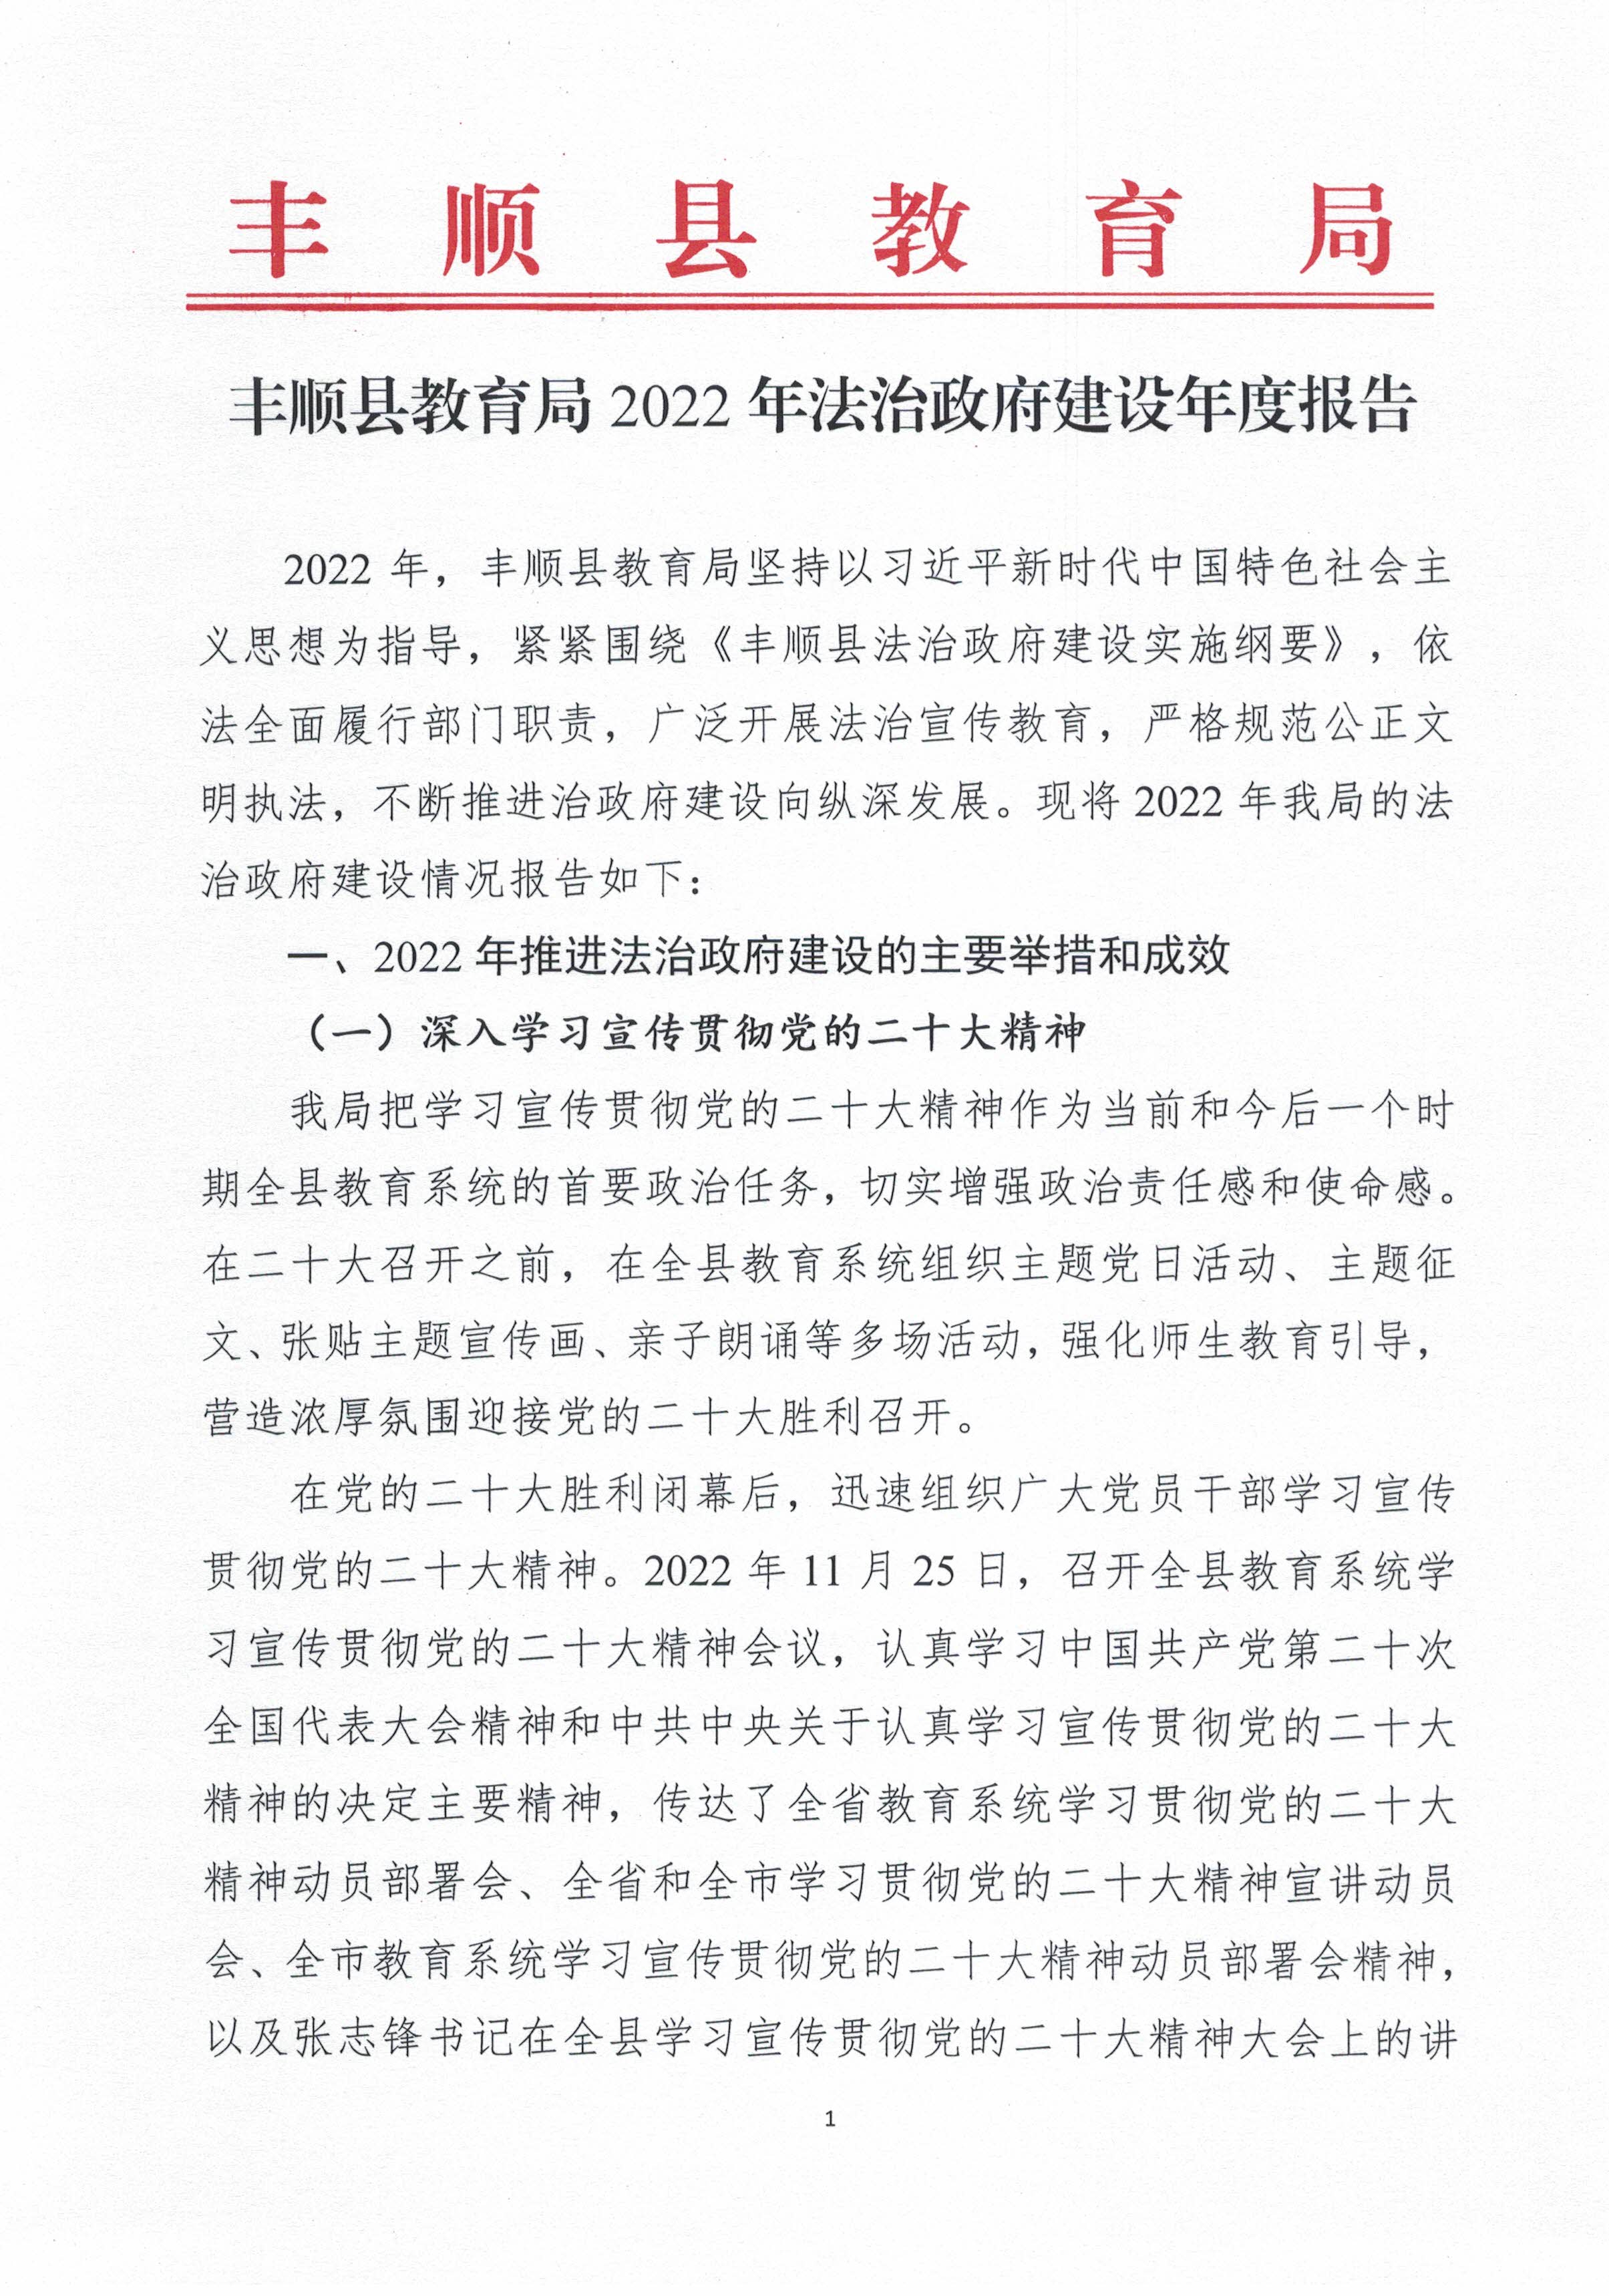 丰顺县教育局2022年法治政府建设年度报告（盖章扫描版）_页面_1.jpg